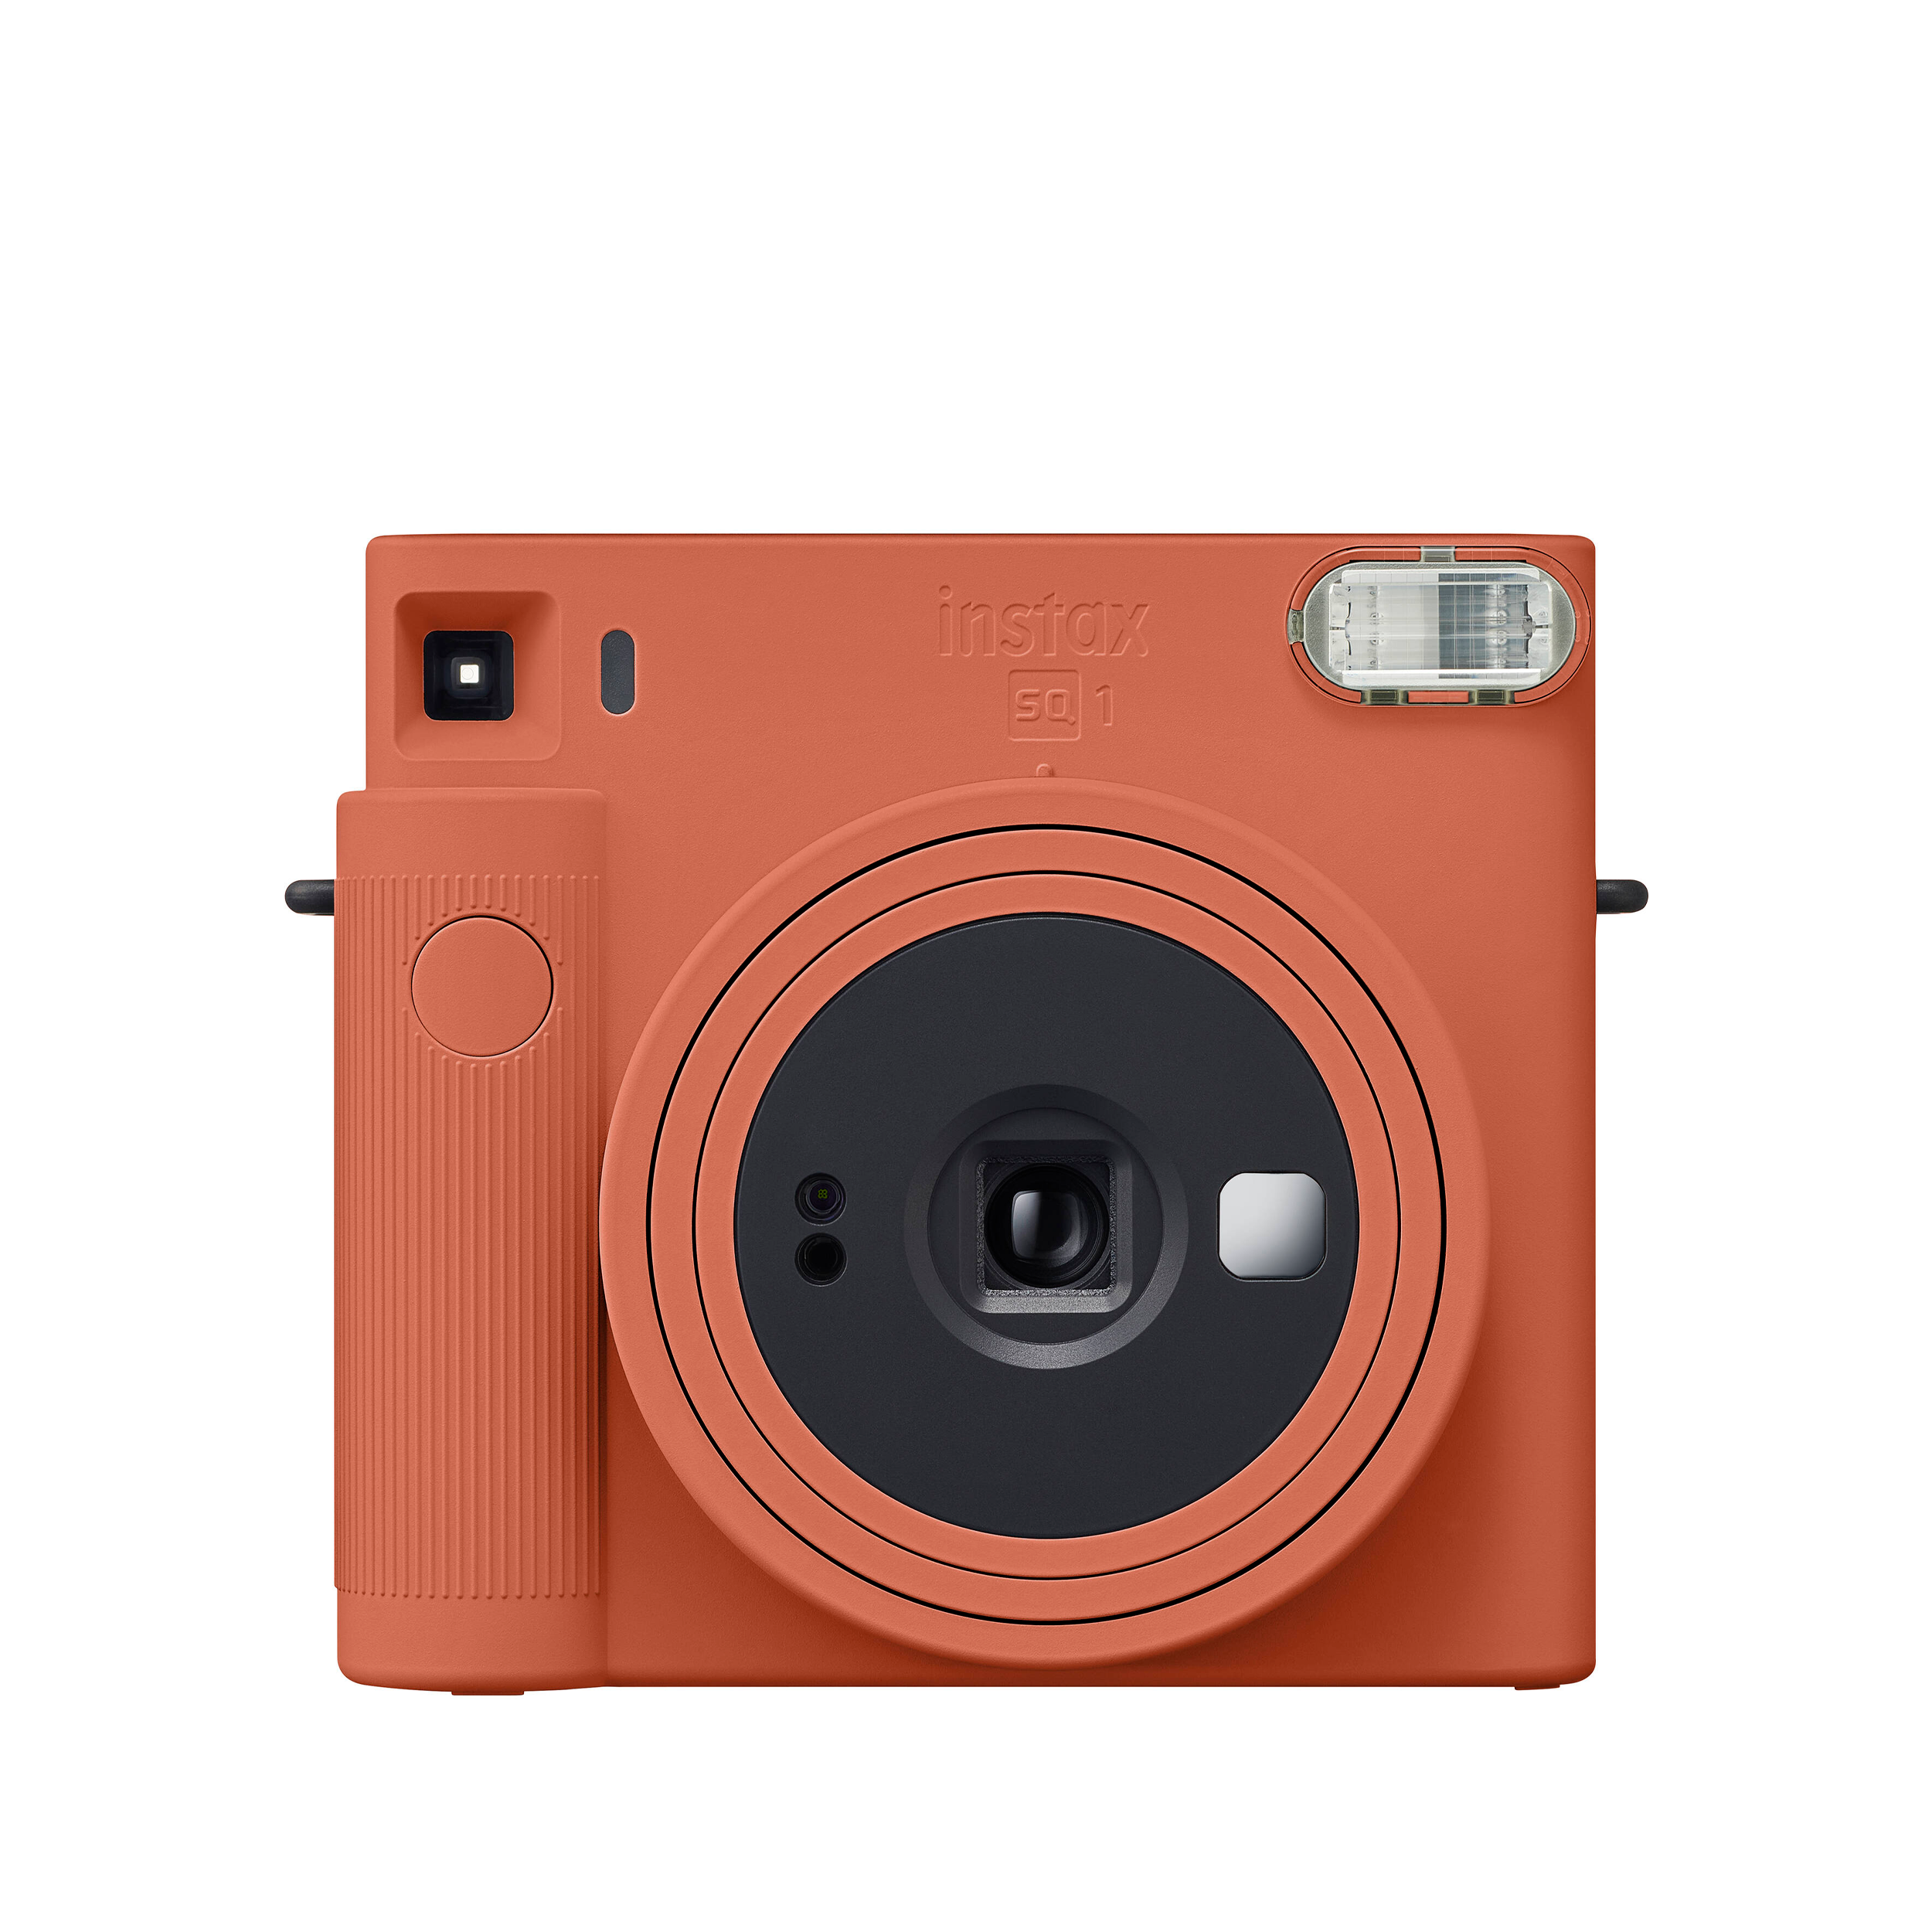 FUJIFILM Instax Square SQ1 Instant Camera - Terracota orange